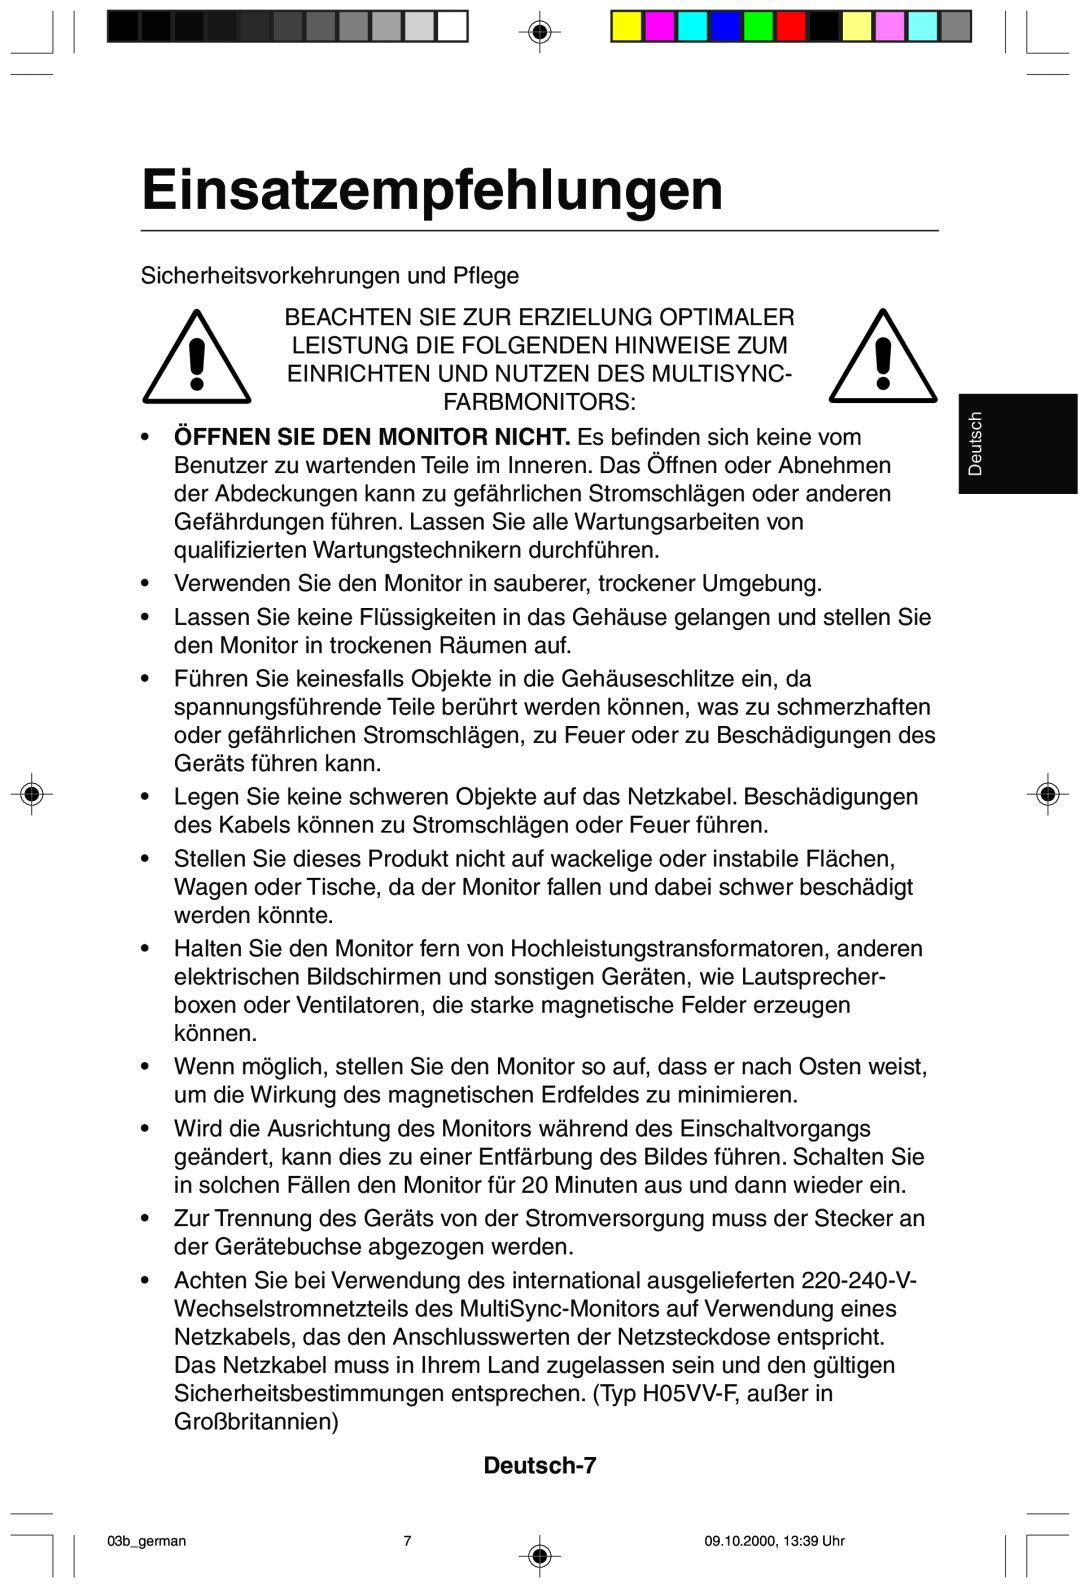 NEC 95F user manual Einsatzempfehlungen, Deutsch-7 